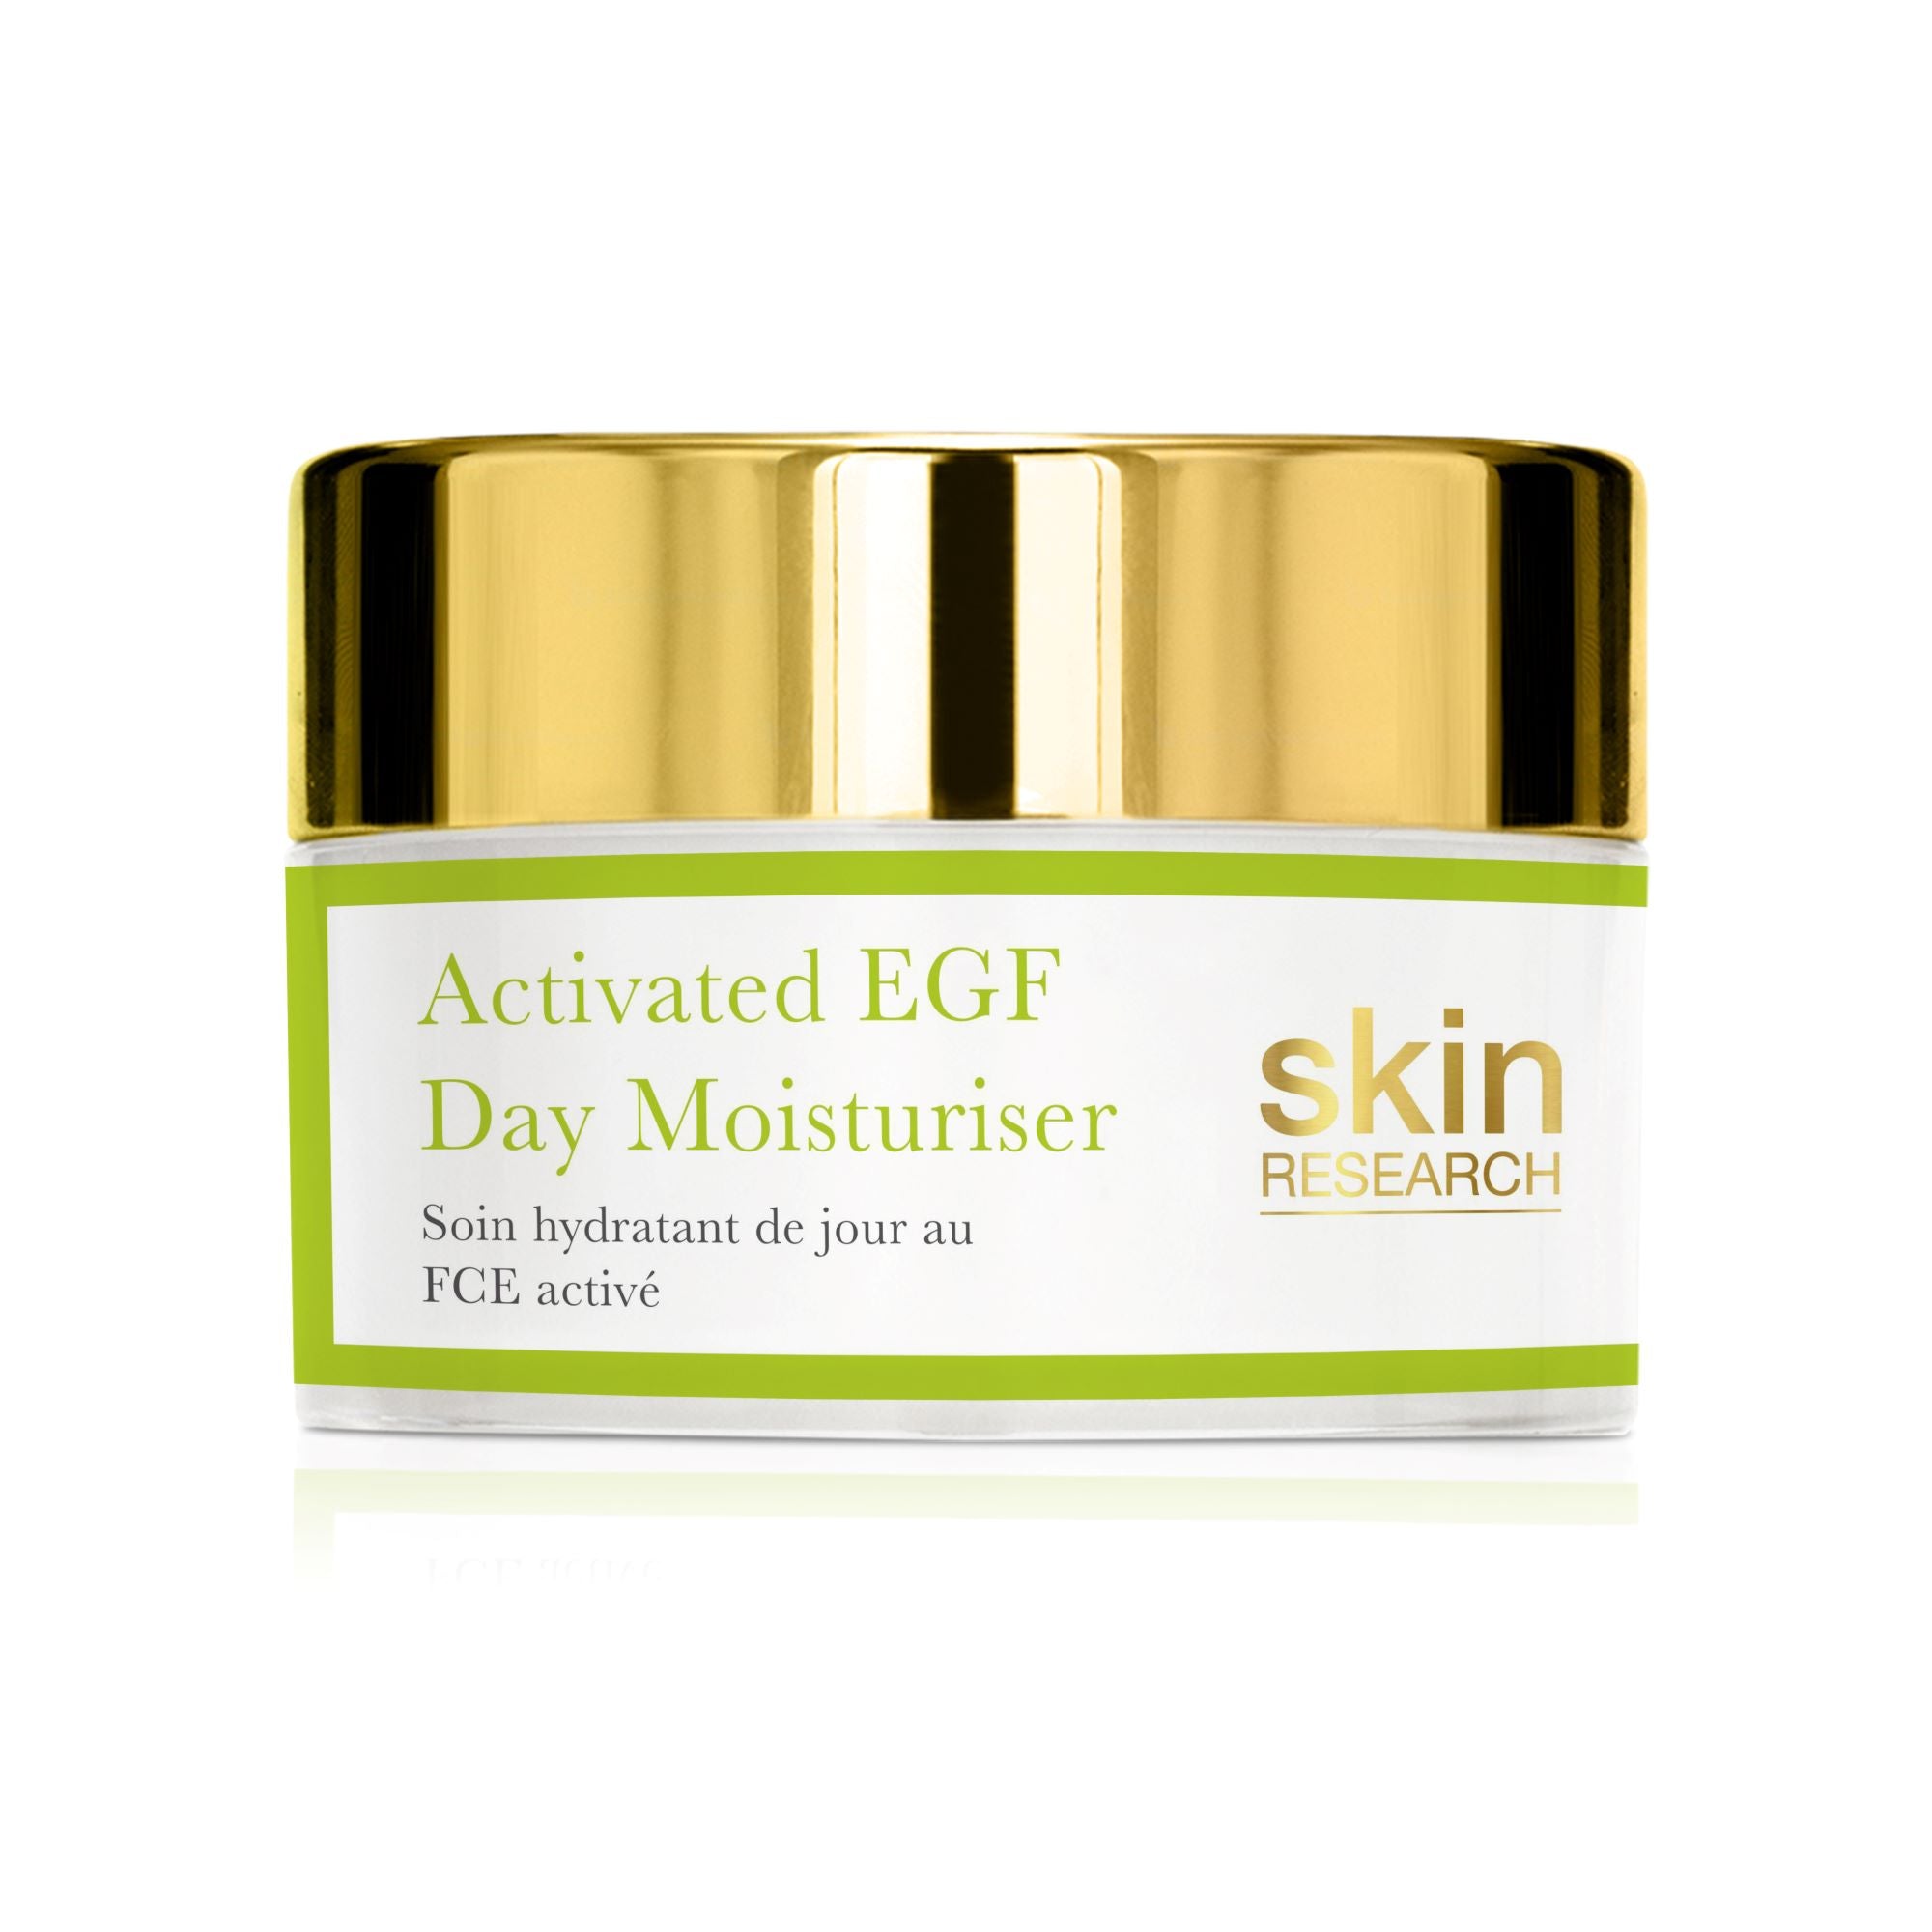 Activated EGF day moisturiser